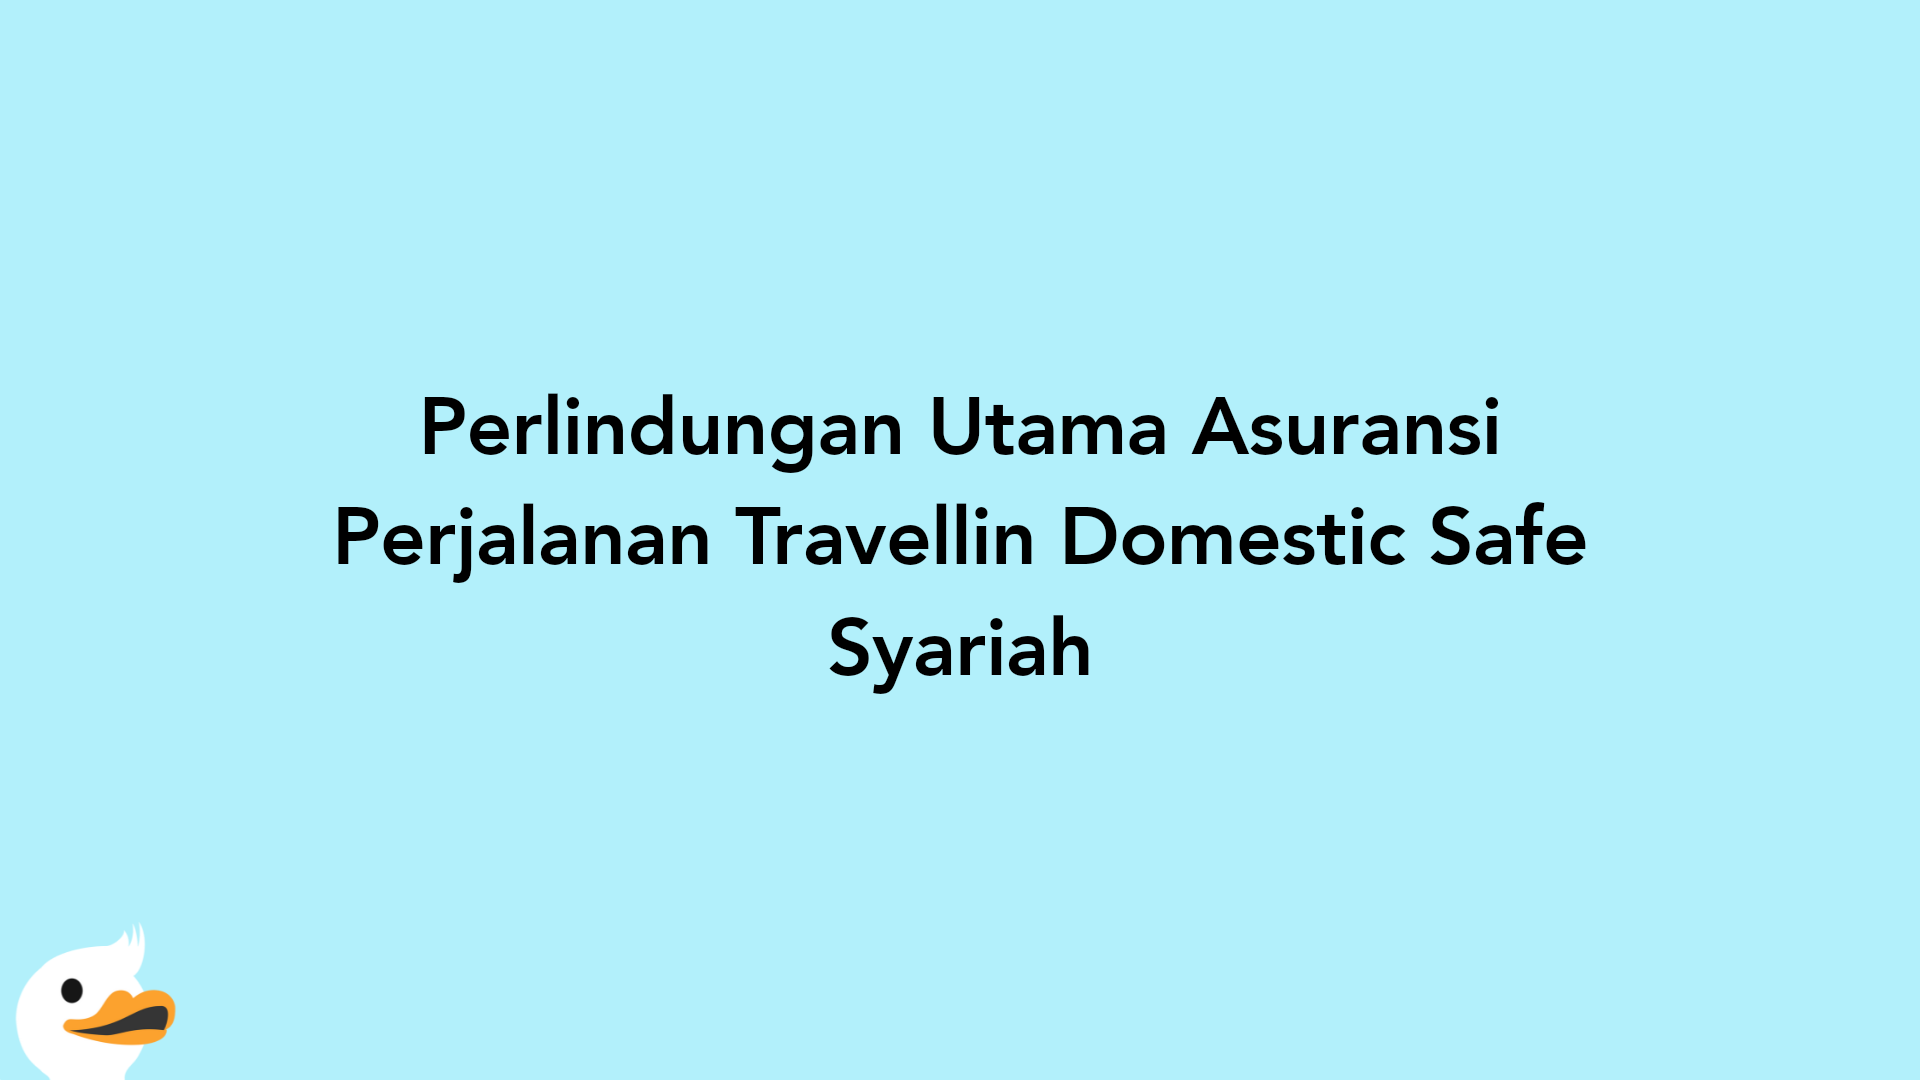 Perlindungan Utama Asuransi Perjalanan Travellin Domestic Safe Syariah